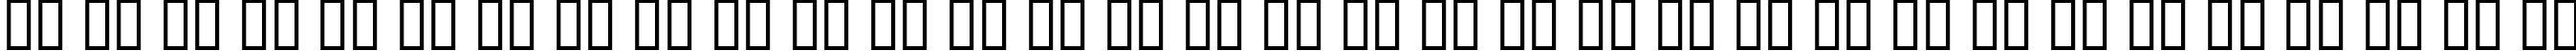 Пример написания русского алфавита шрифтом Panama Normal